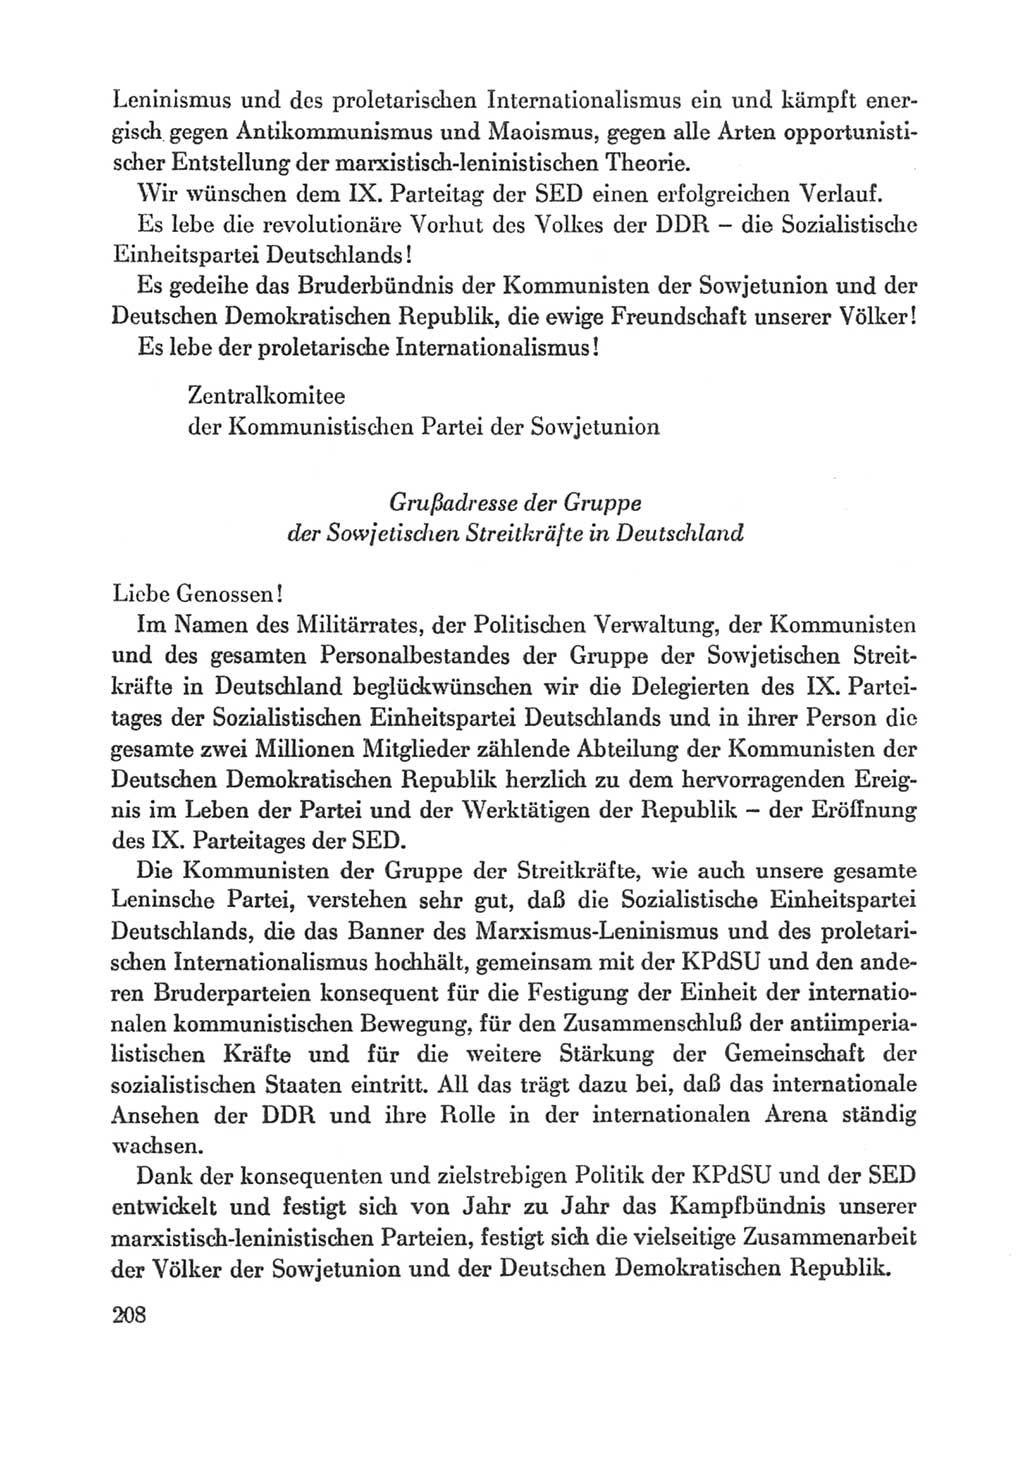 Protokoll der Verhandlungen des Ⅸ. Parteitages der Sozialistischen Einheitspartei Deutschlands (SED) [Deutsche Demokratische Republik (DDR)] 1976, Band 1, Seite 208 (Prot. Verh. Ⅸ. PT SED DDR 1976, Bd. 1, S. 208)